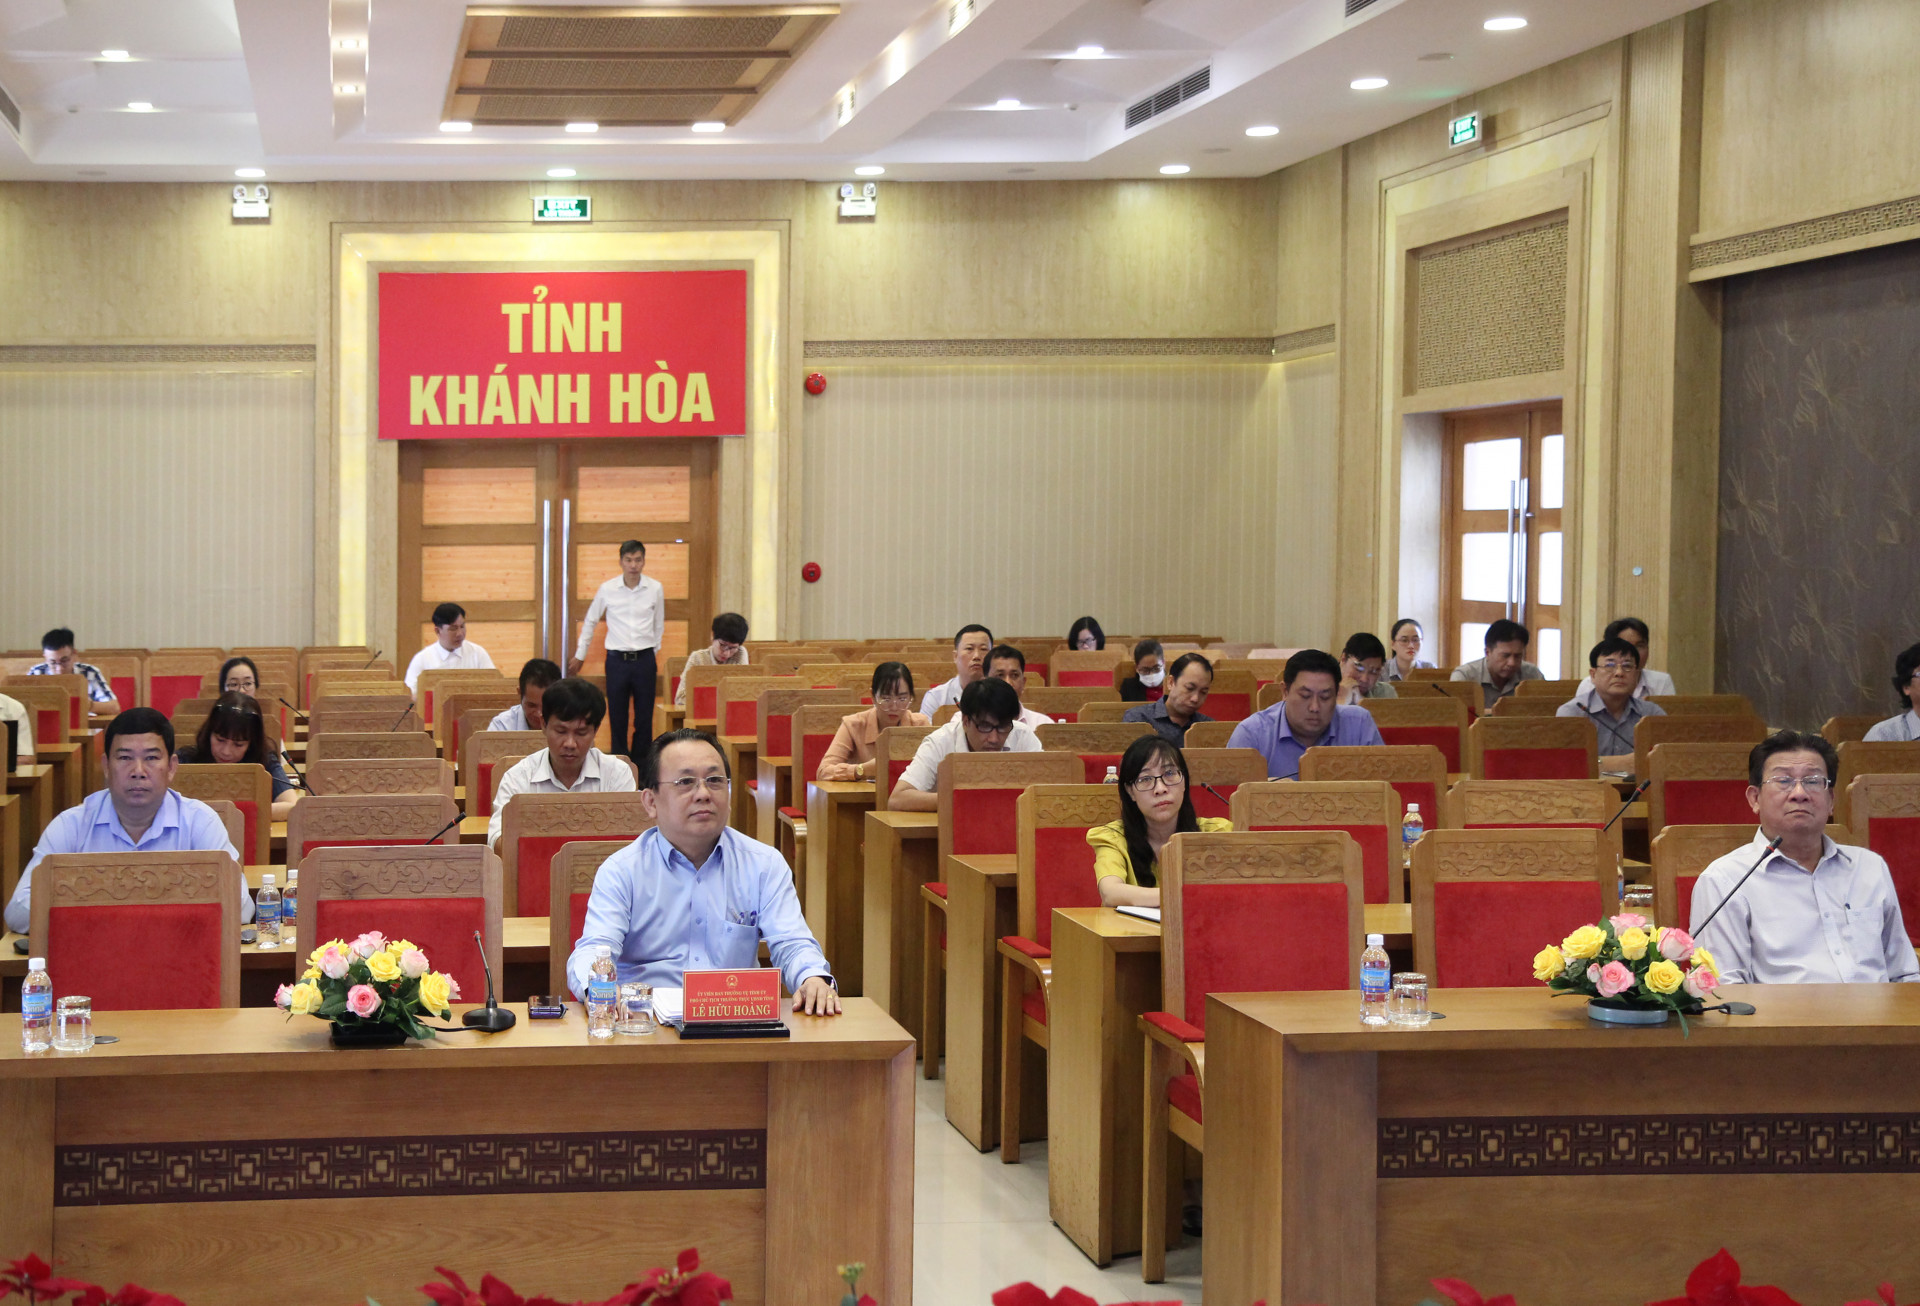 Đồng chí Lê Hữu Hoàng tham gia phiên họp tại điểm cầu Khánh Hòa.